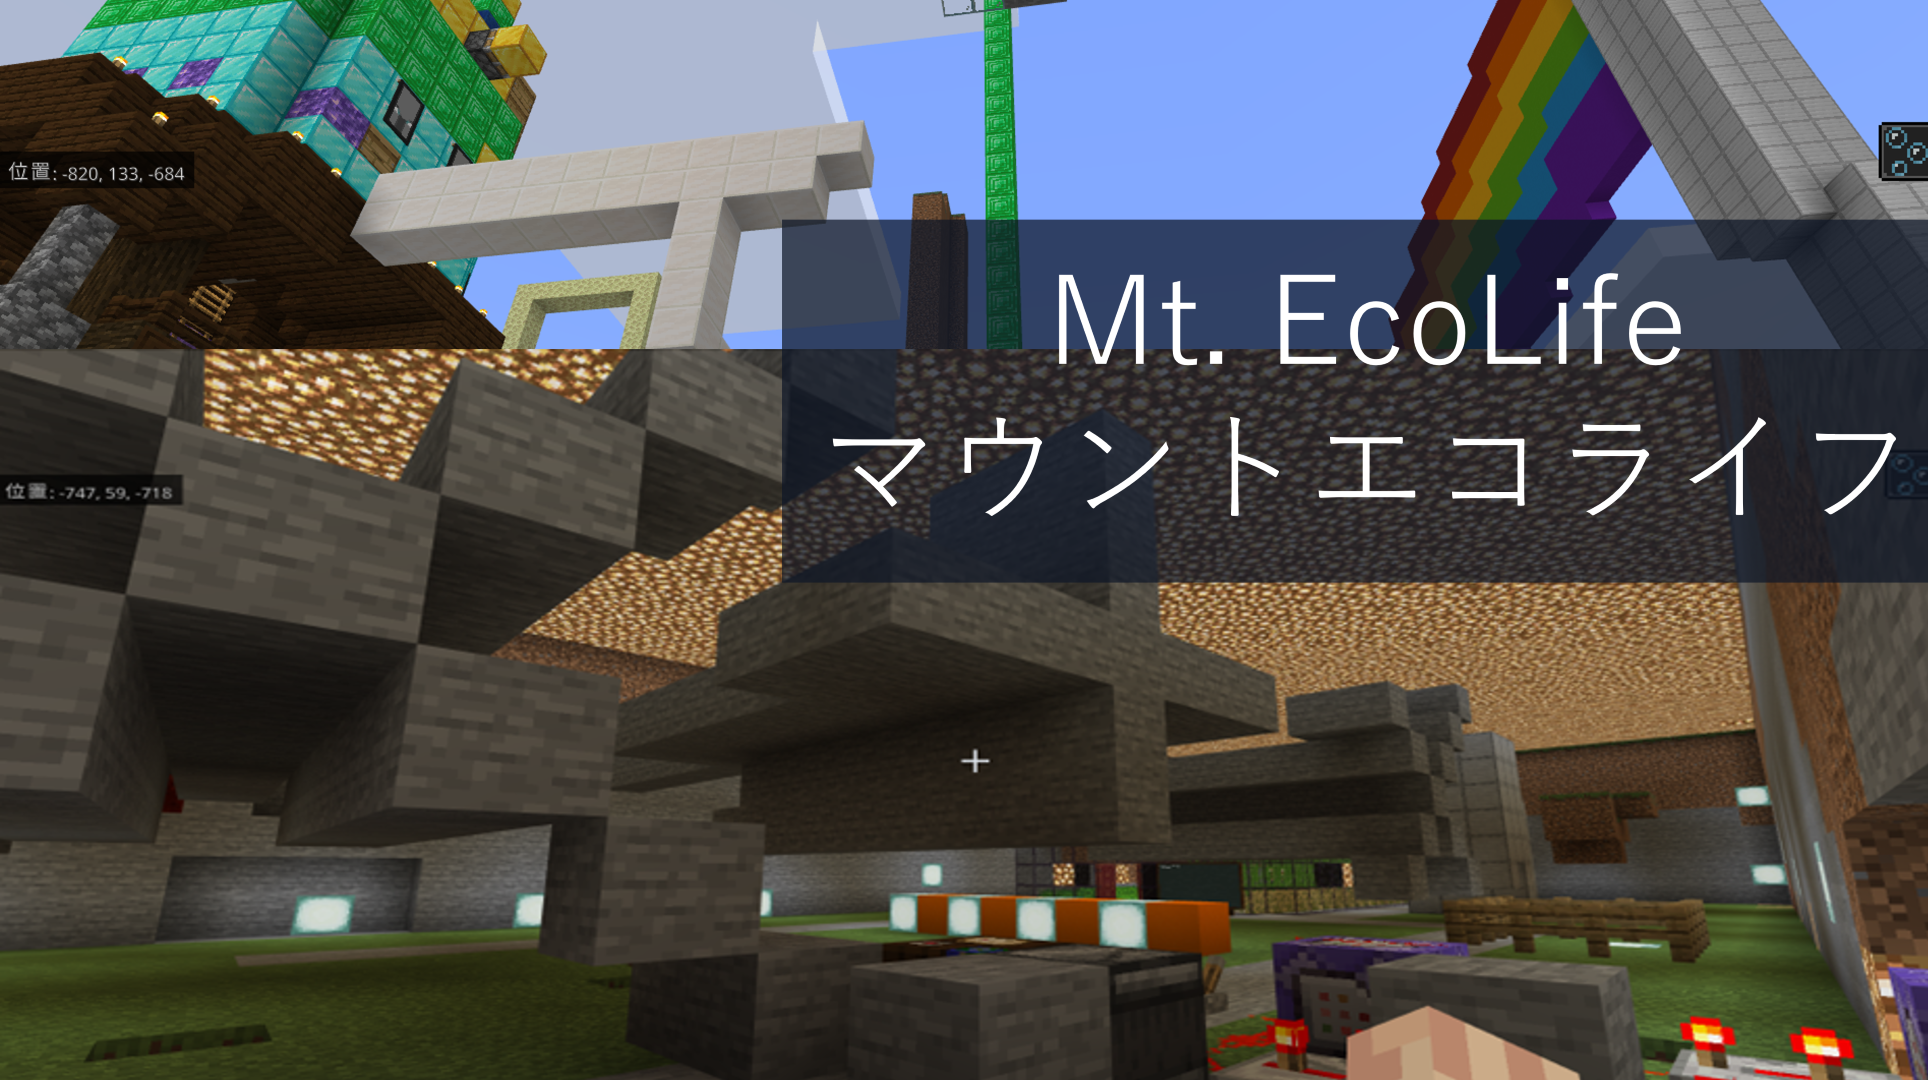 Mt. EcoLife (マウント エコライフ)